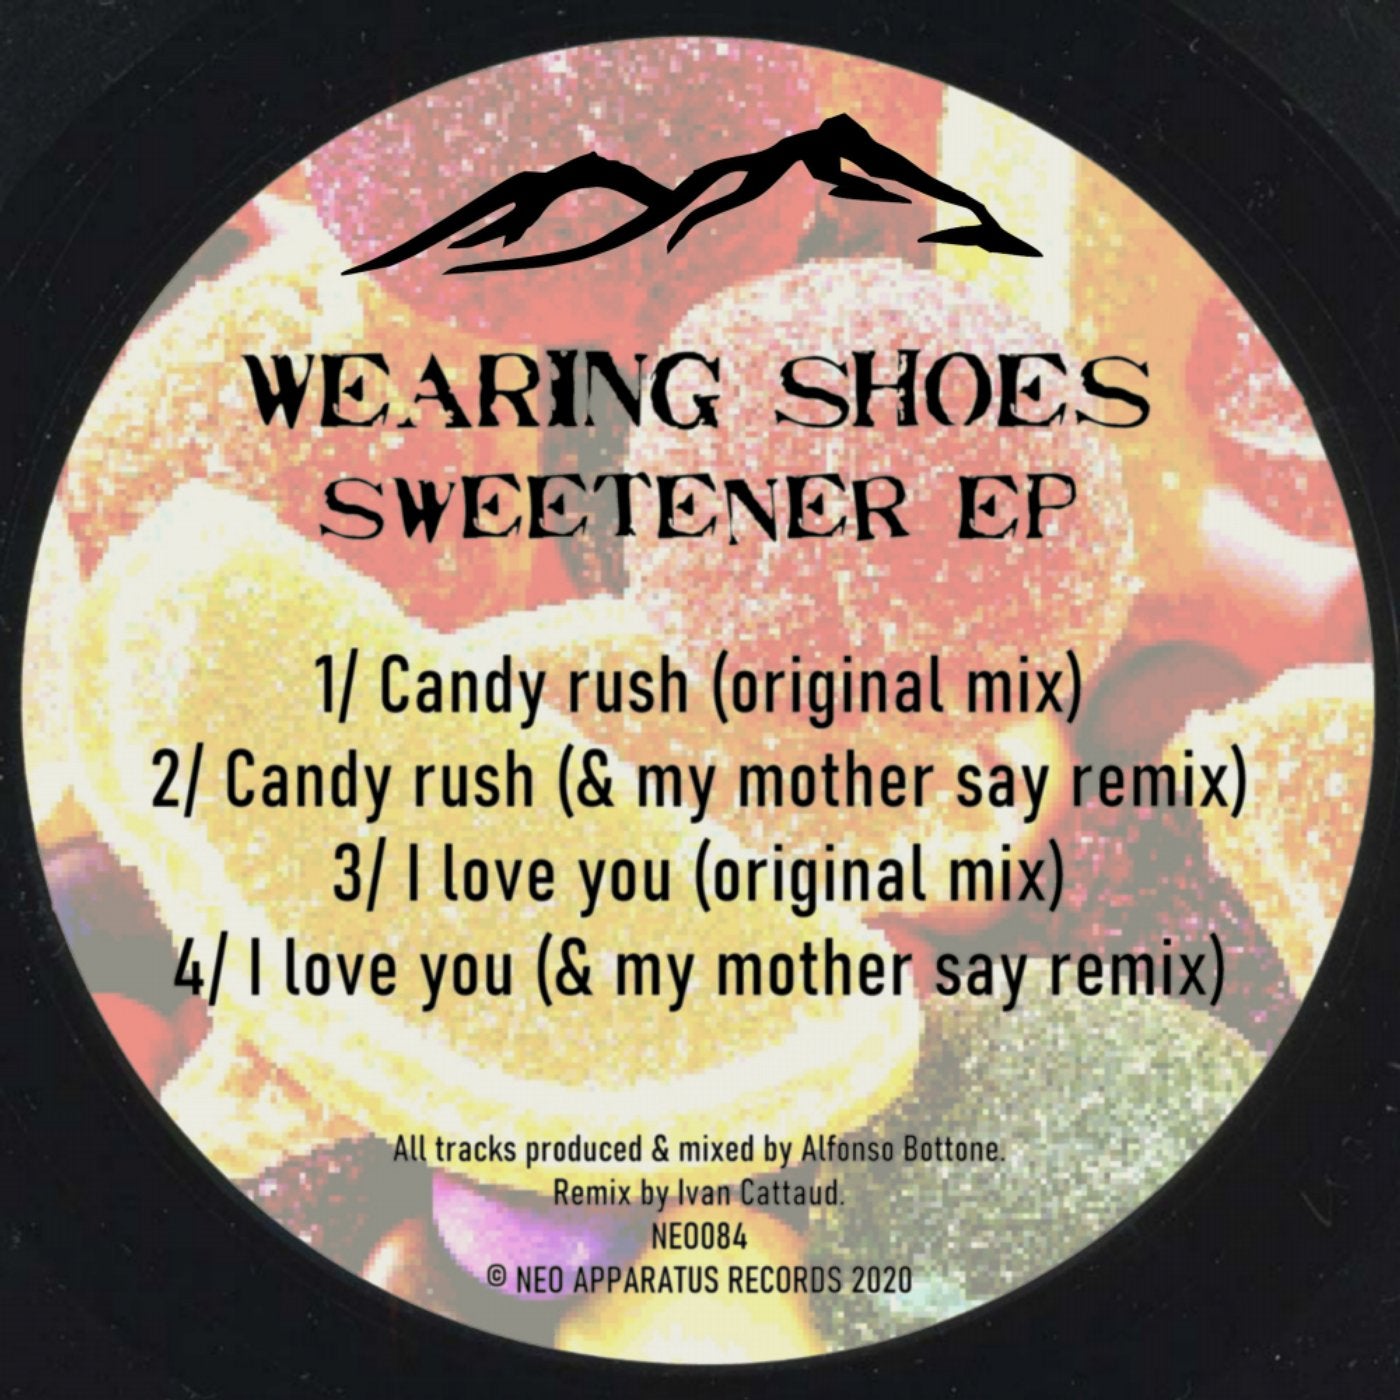 Sweetener EP